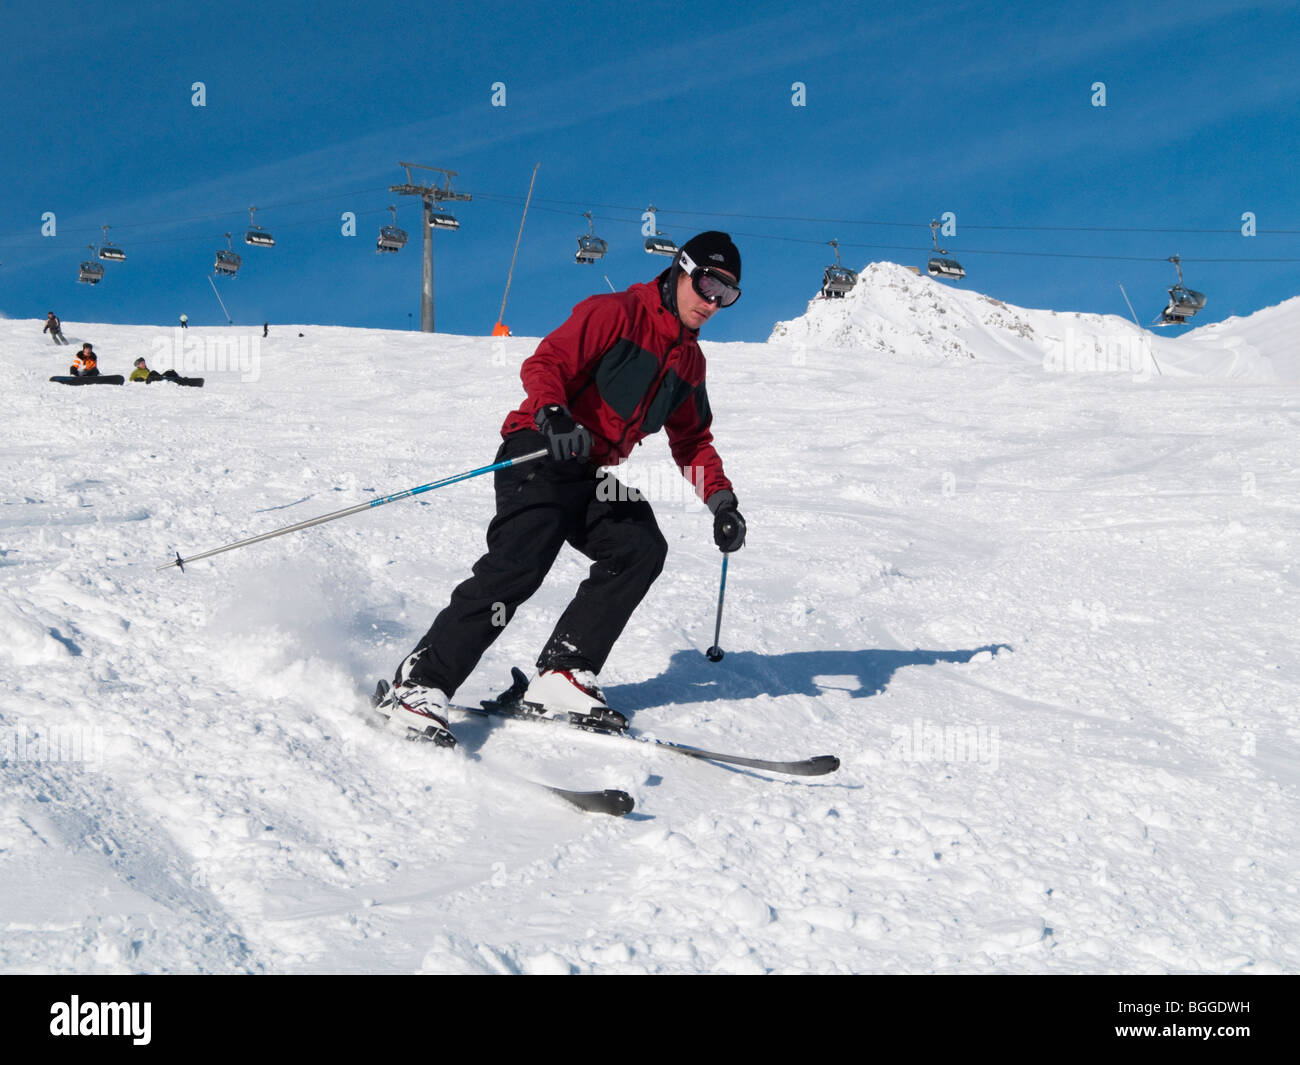 Männlichen Skifahrer in rote Jacke Skifahren auf verschneite Ski Pisten im  alpinen Ferienort. St. Anton am Arlberg-Tyrol-Österreich-Europa  Stockfotografie - Alamy